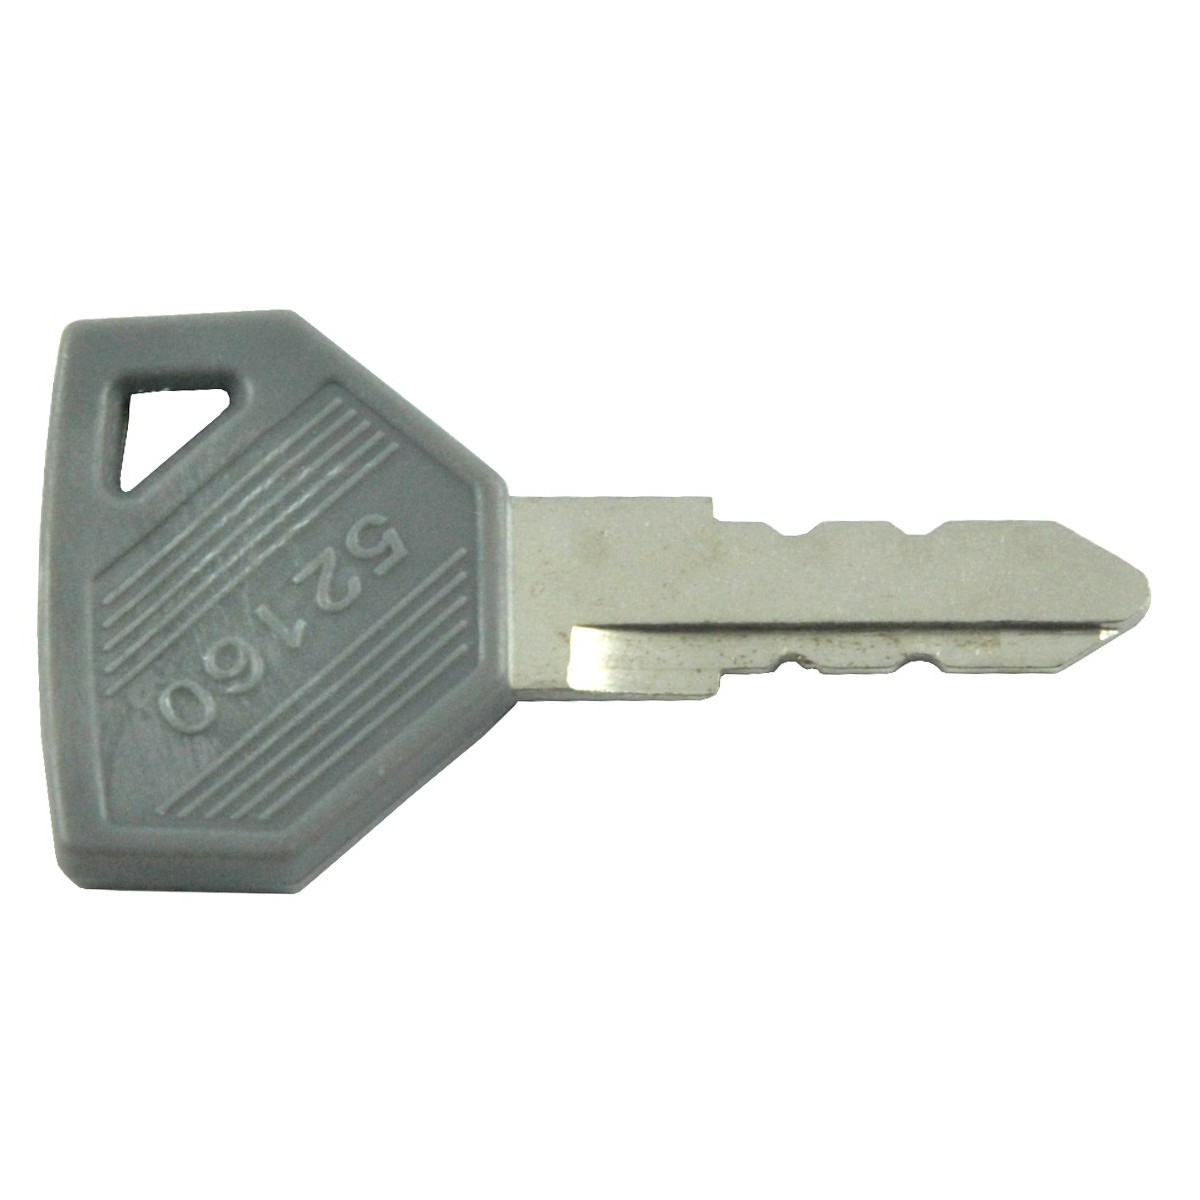 Kľúč 52160 pre zapaľovanie Yanmar AF, F, FX, Ke-3, Ke-2